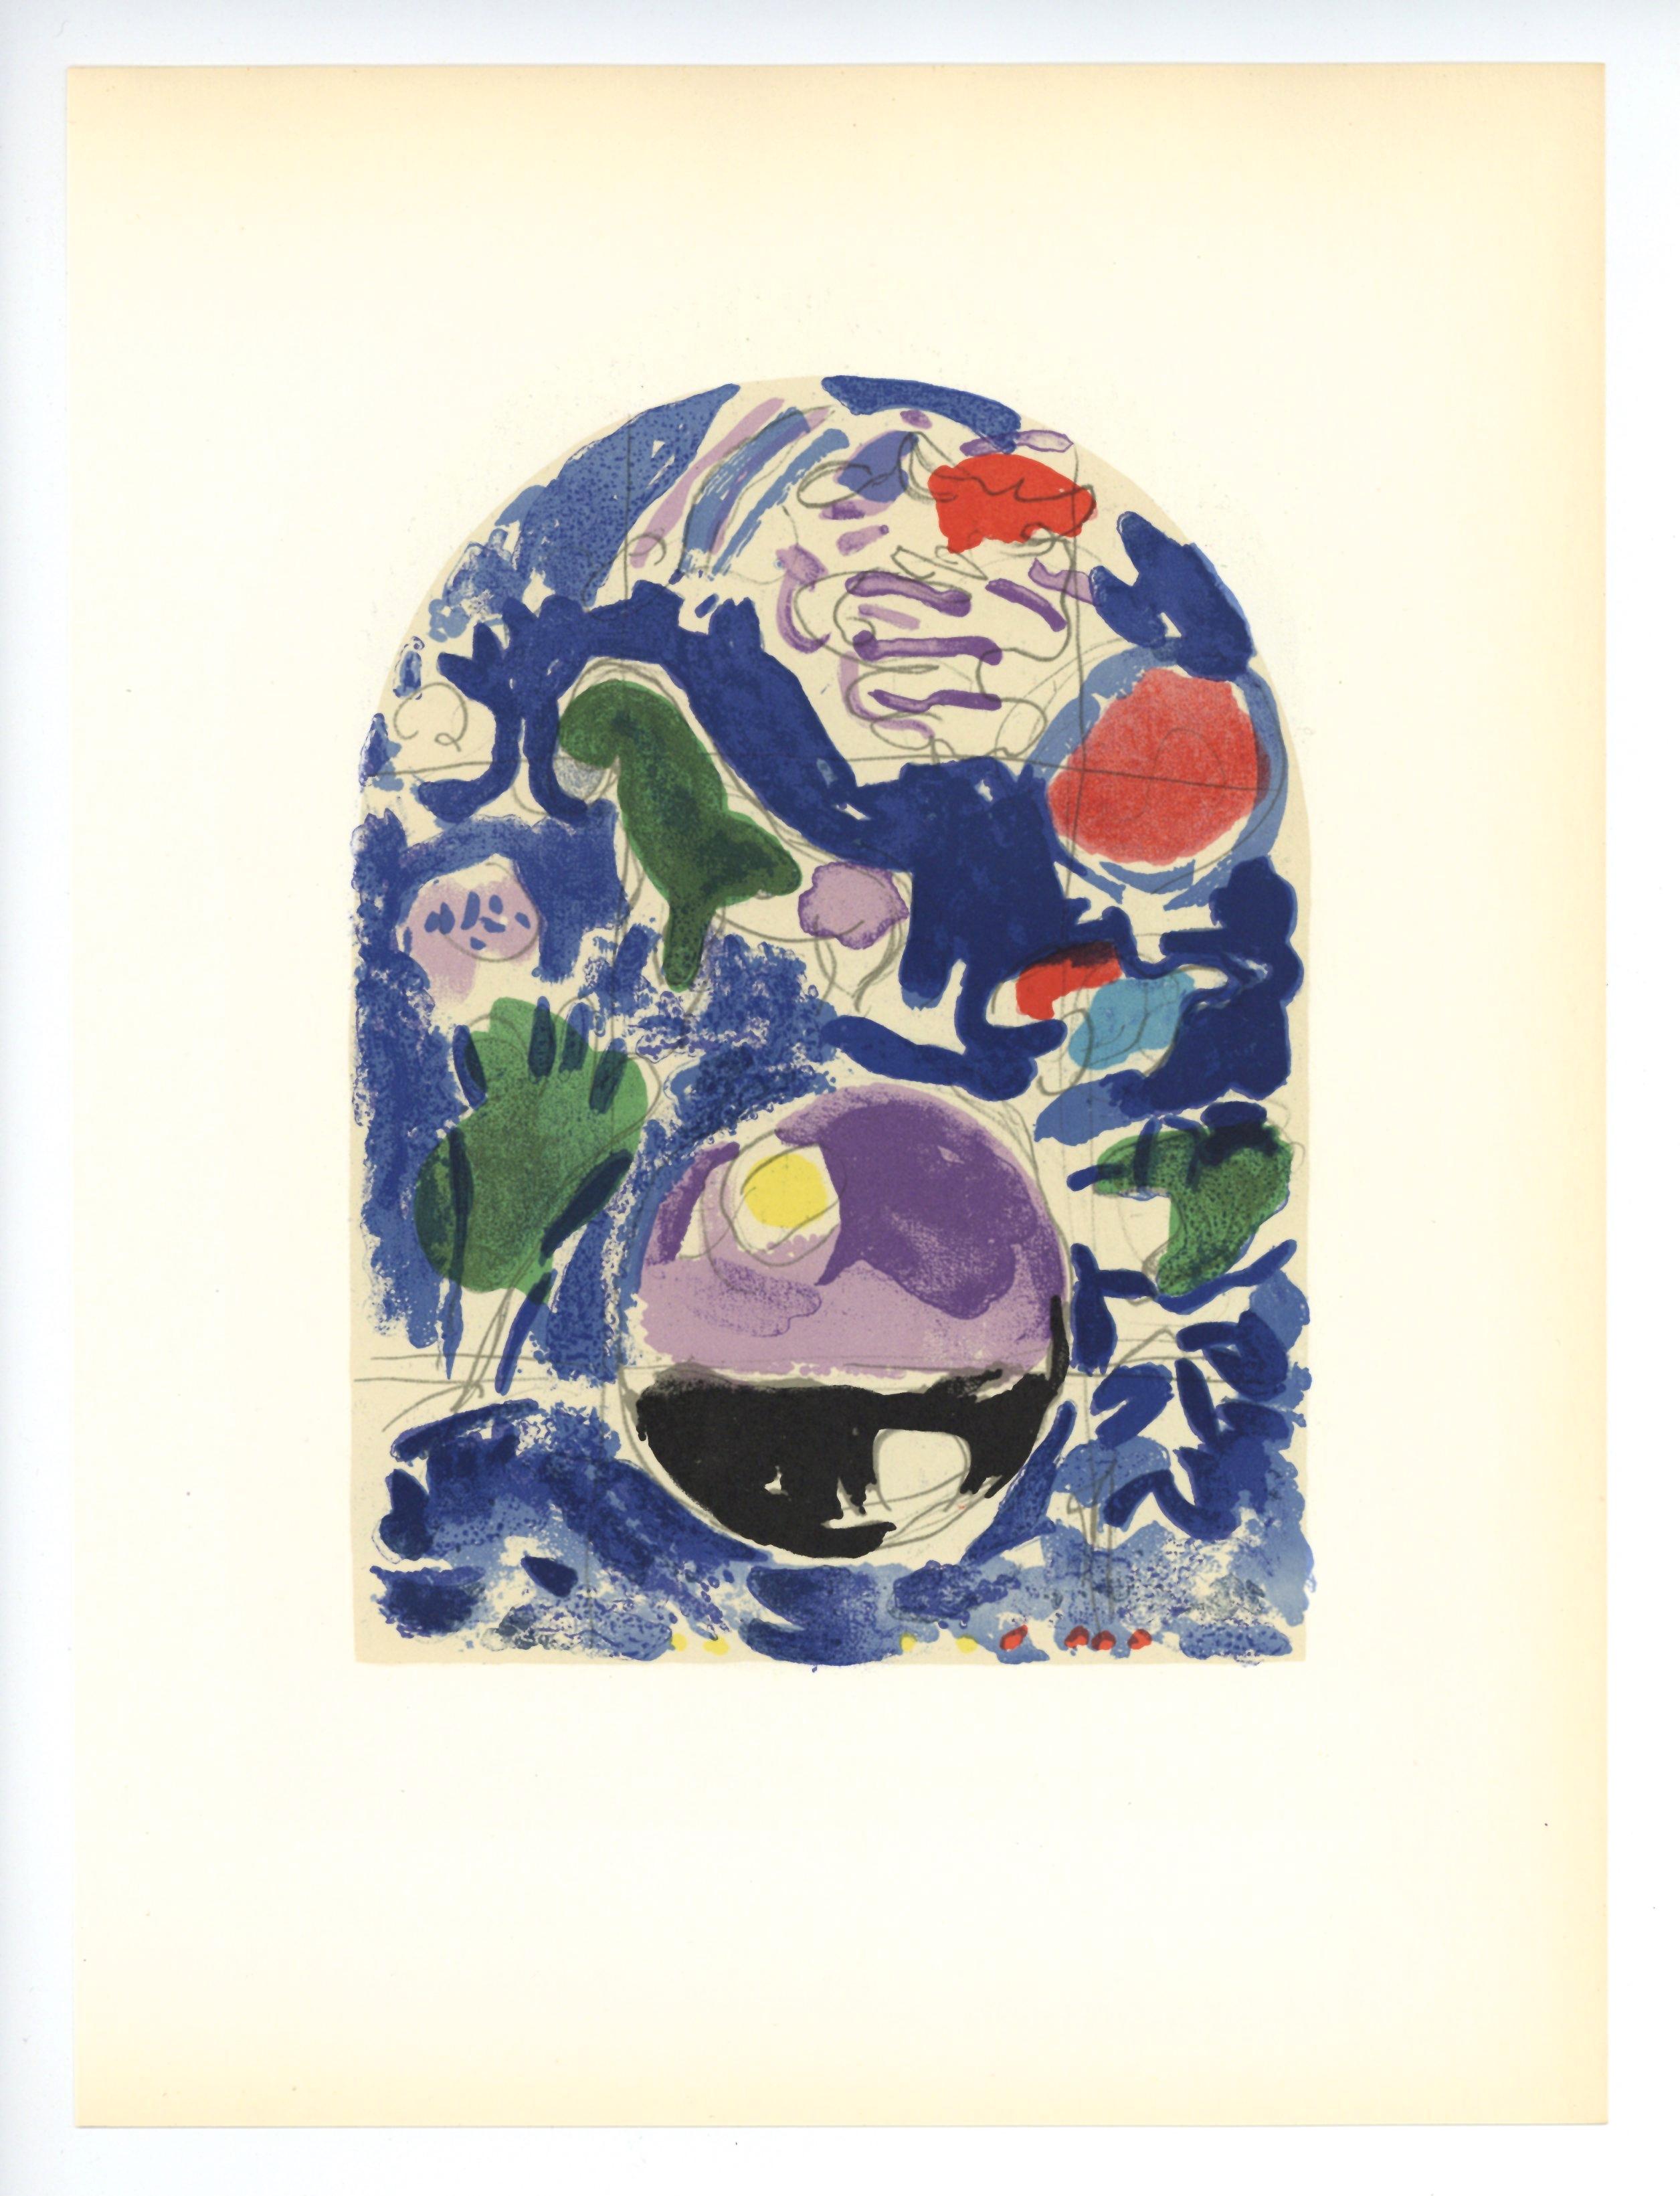 Medium: 12 Lithografien (nach den Aquarellen). Eine schöne Sammlung von Lithografien, die 1962 im Atelier Mourlot für 